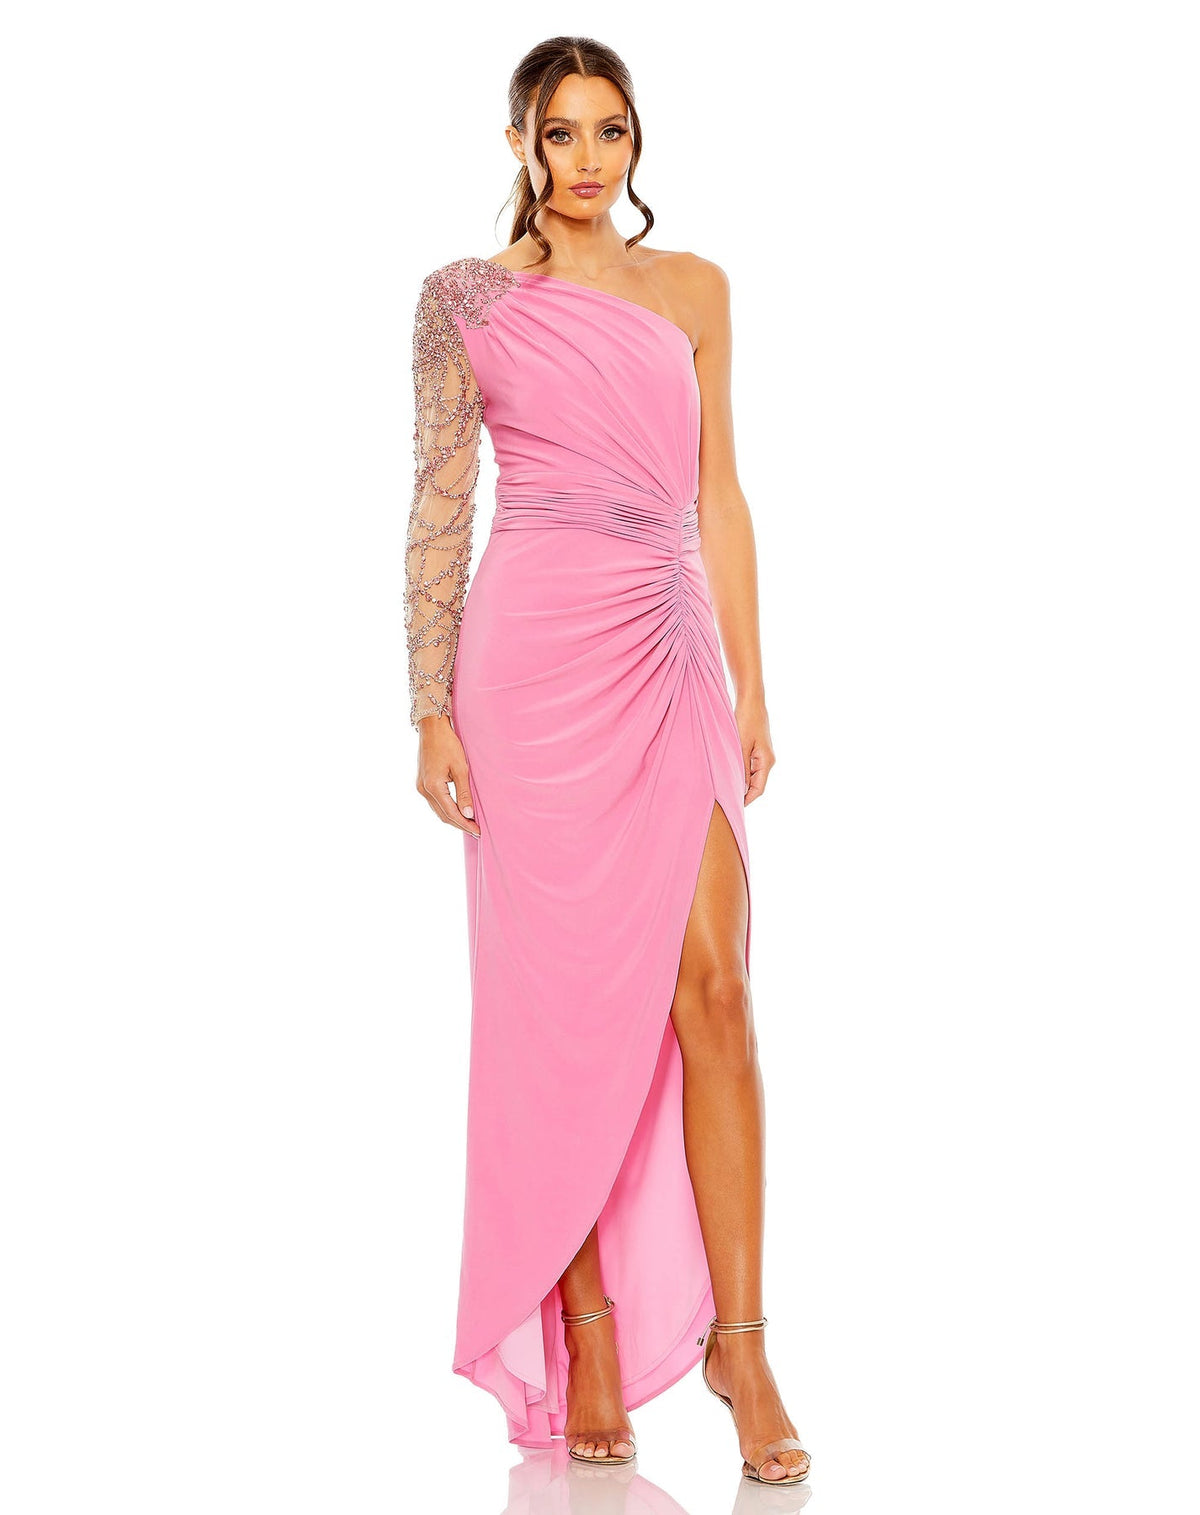 Style #2215 Designer: Mac Duggal EMBELLISHED ONE SHOULDER LONG SLEEVE GOWN, pink